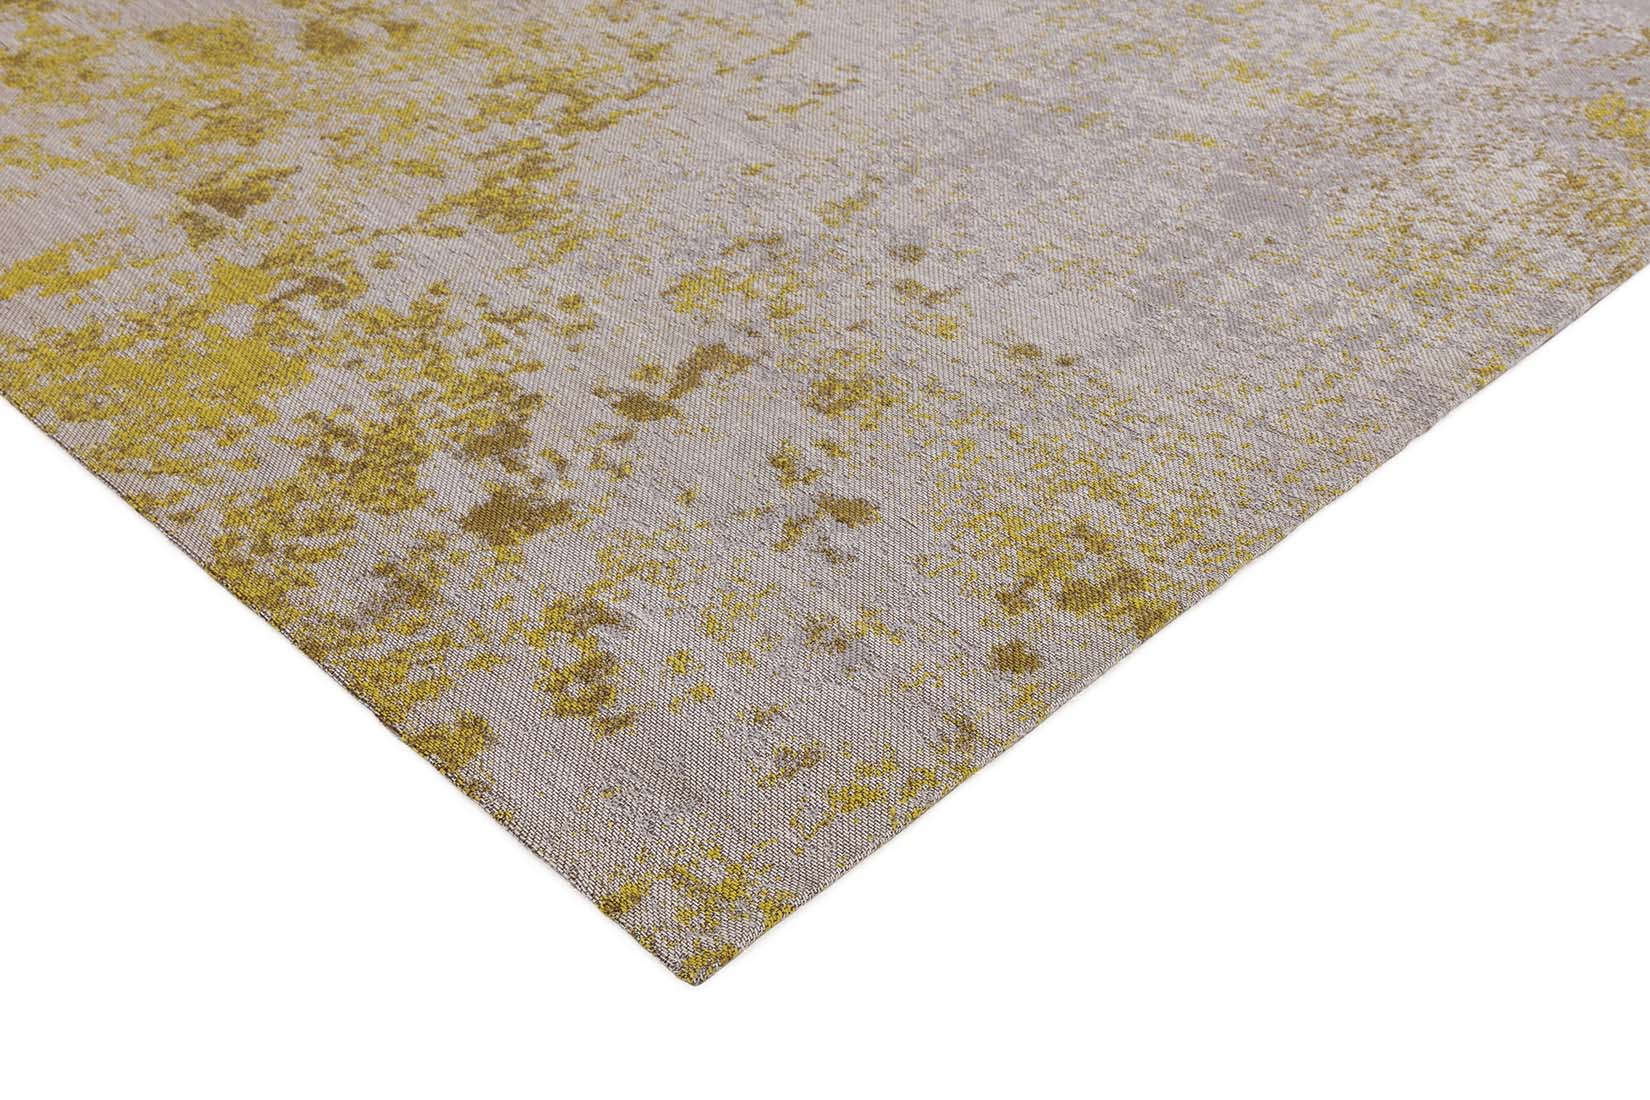 abstract indoor/outdoor rug in ochre
